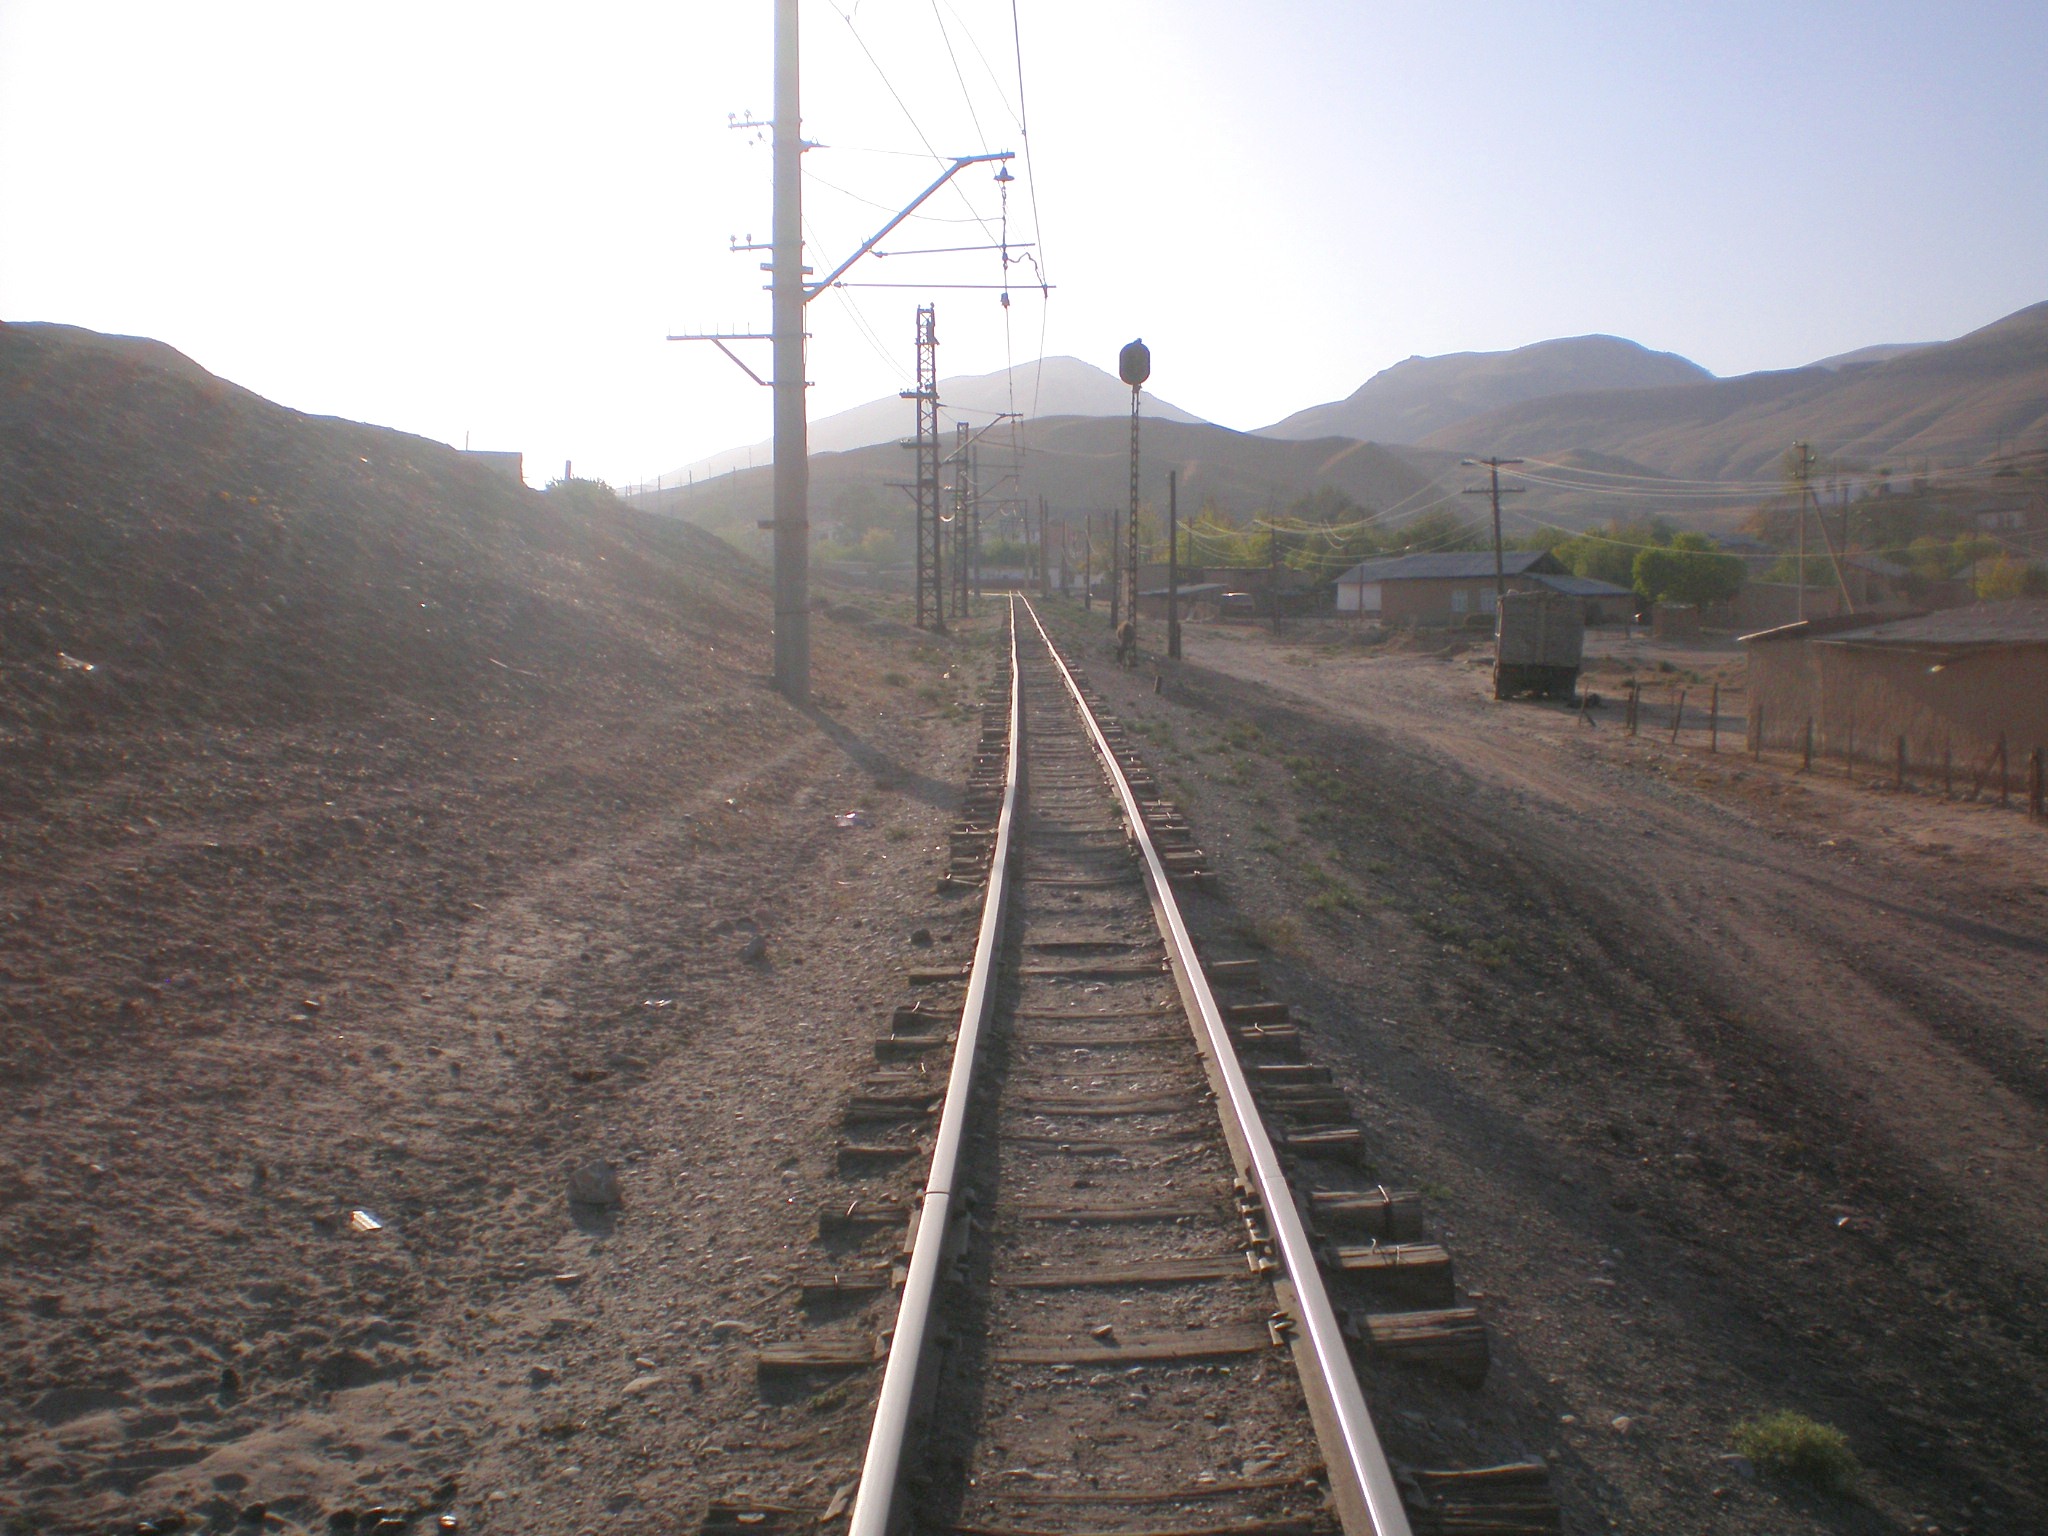 Сулюктинская узкоколейная железная дорога  —  фотографии, сделанные в 2008 году (часть 36)